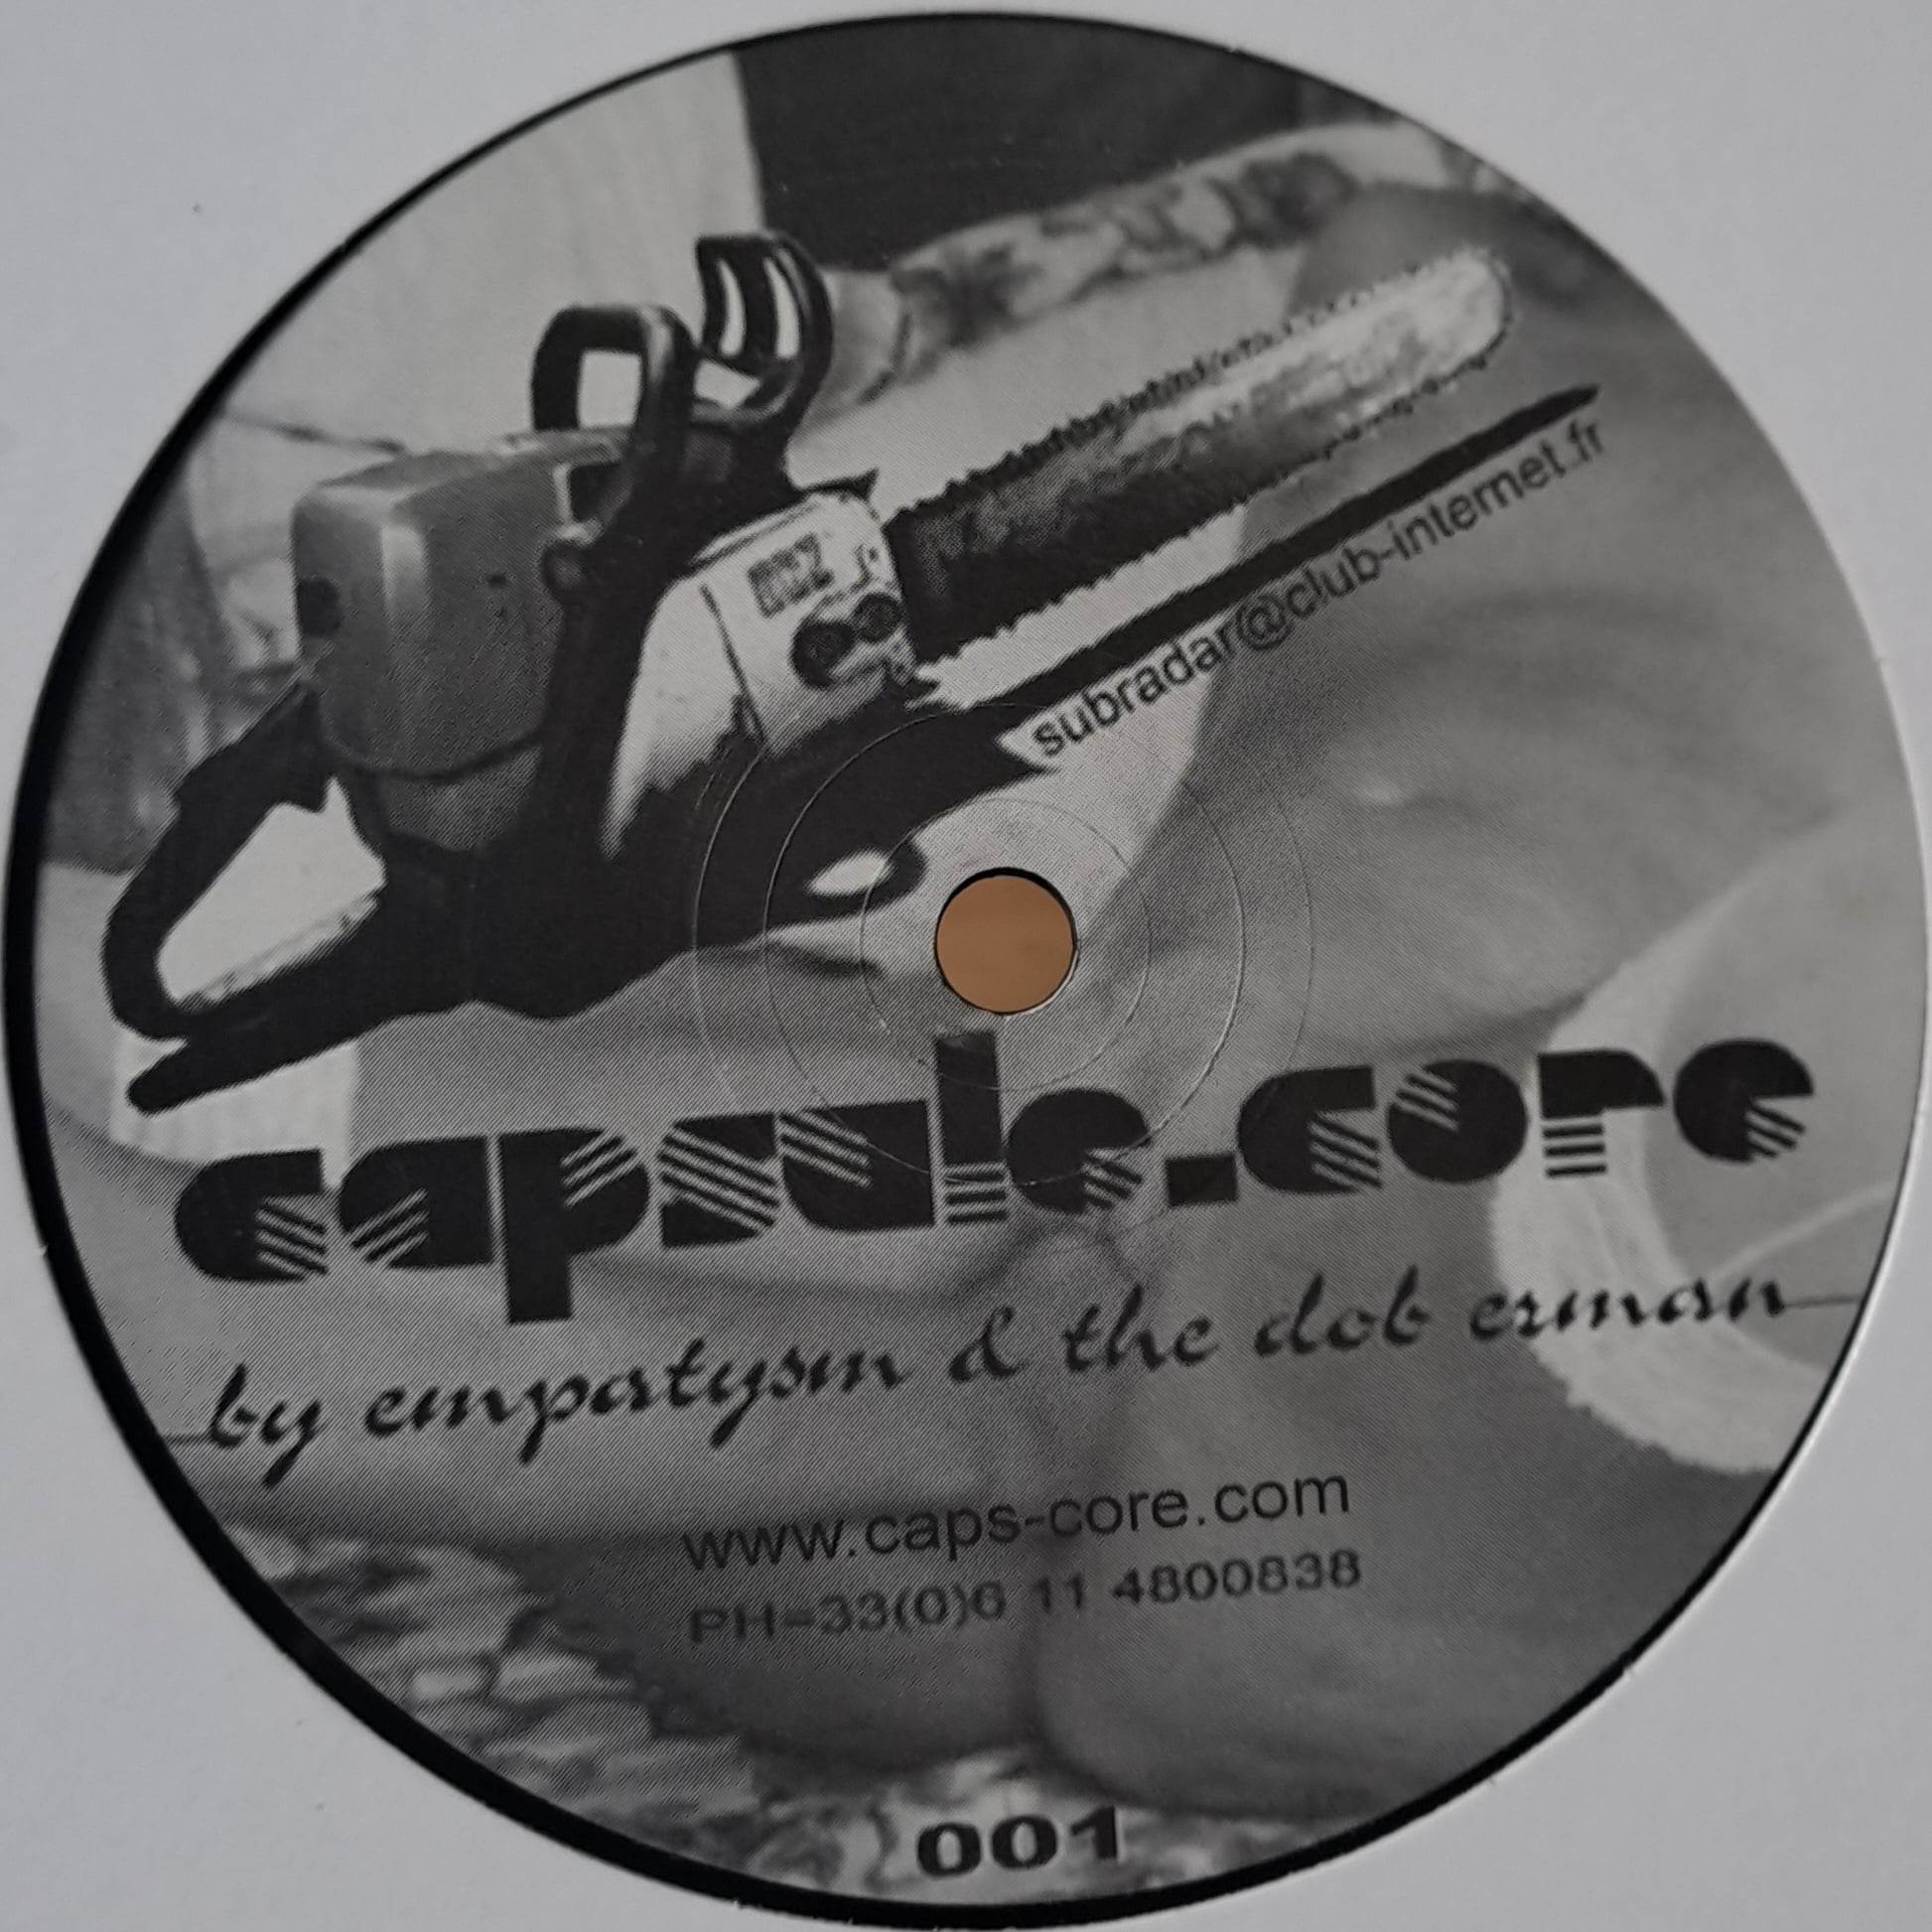 Capsule Core 001 - vinyle hardcore